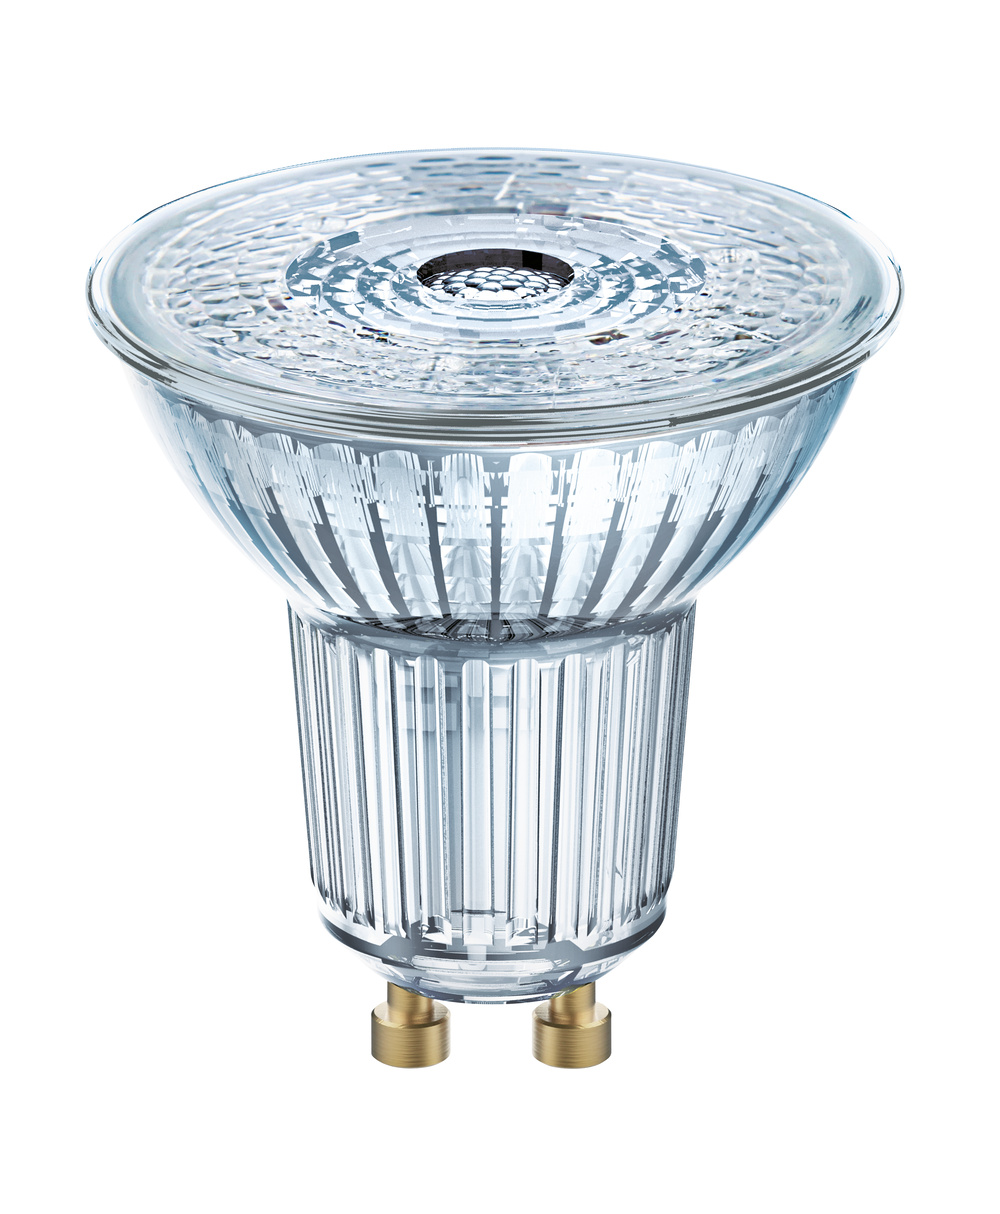 Ledvance LED lamp LED PAR16 P 2.6W 827 GU10 – 4099854044687 – replacement for 35 W - 4099854044687